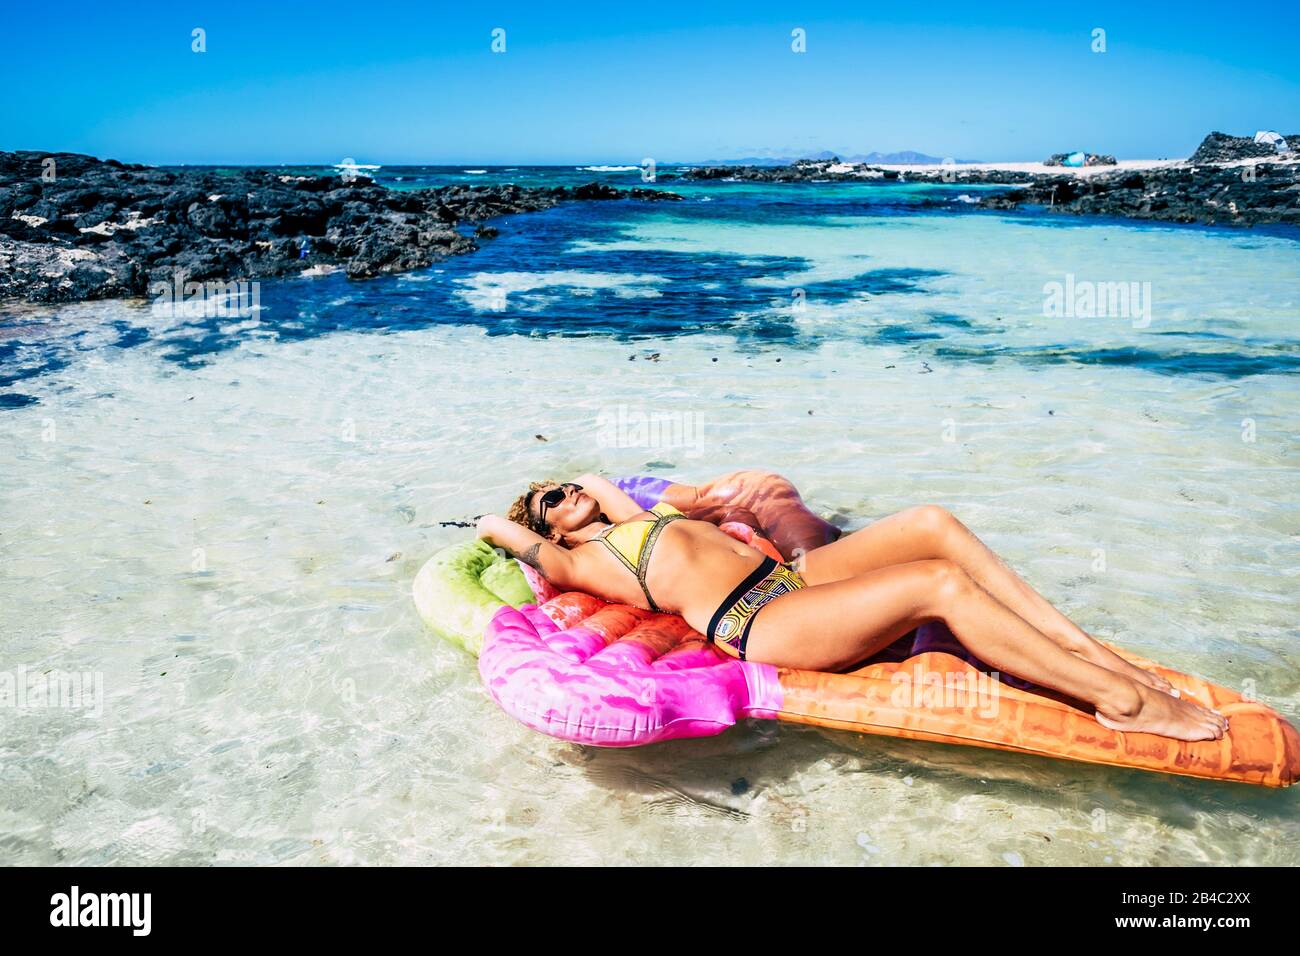 Schöne junge Frau hat ein Sonnenbad, das sich auf einer trendigen lilo aufblasbaren Matratze in einer blauen tropischen Ozeanlagune mit Sand und Felsen entspannen kann - Hafen- und Paradieskonzept für Reisen und Lifestyle Stockfoto